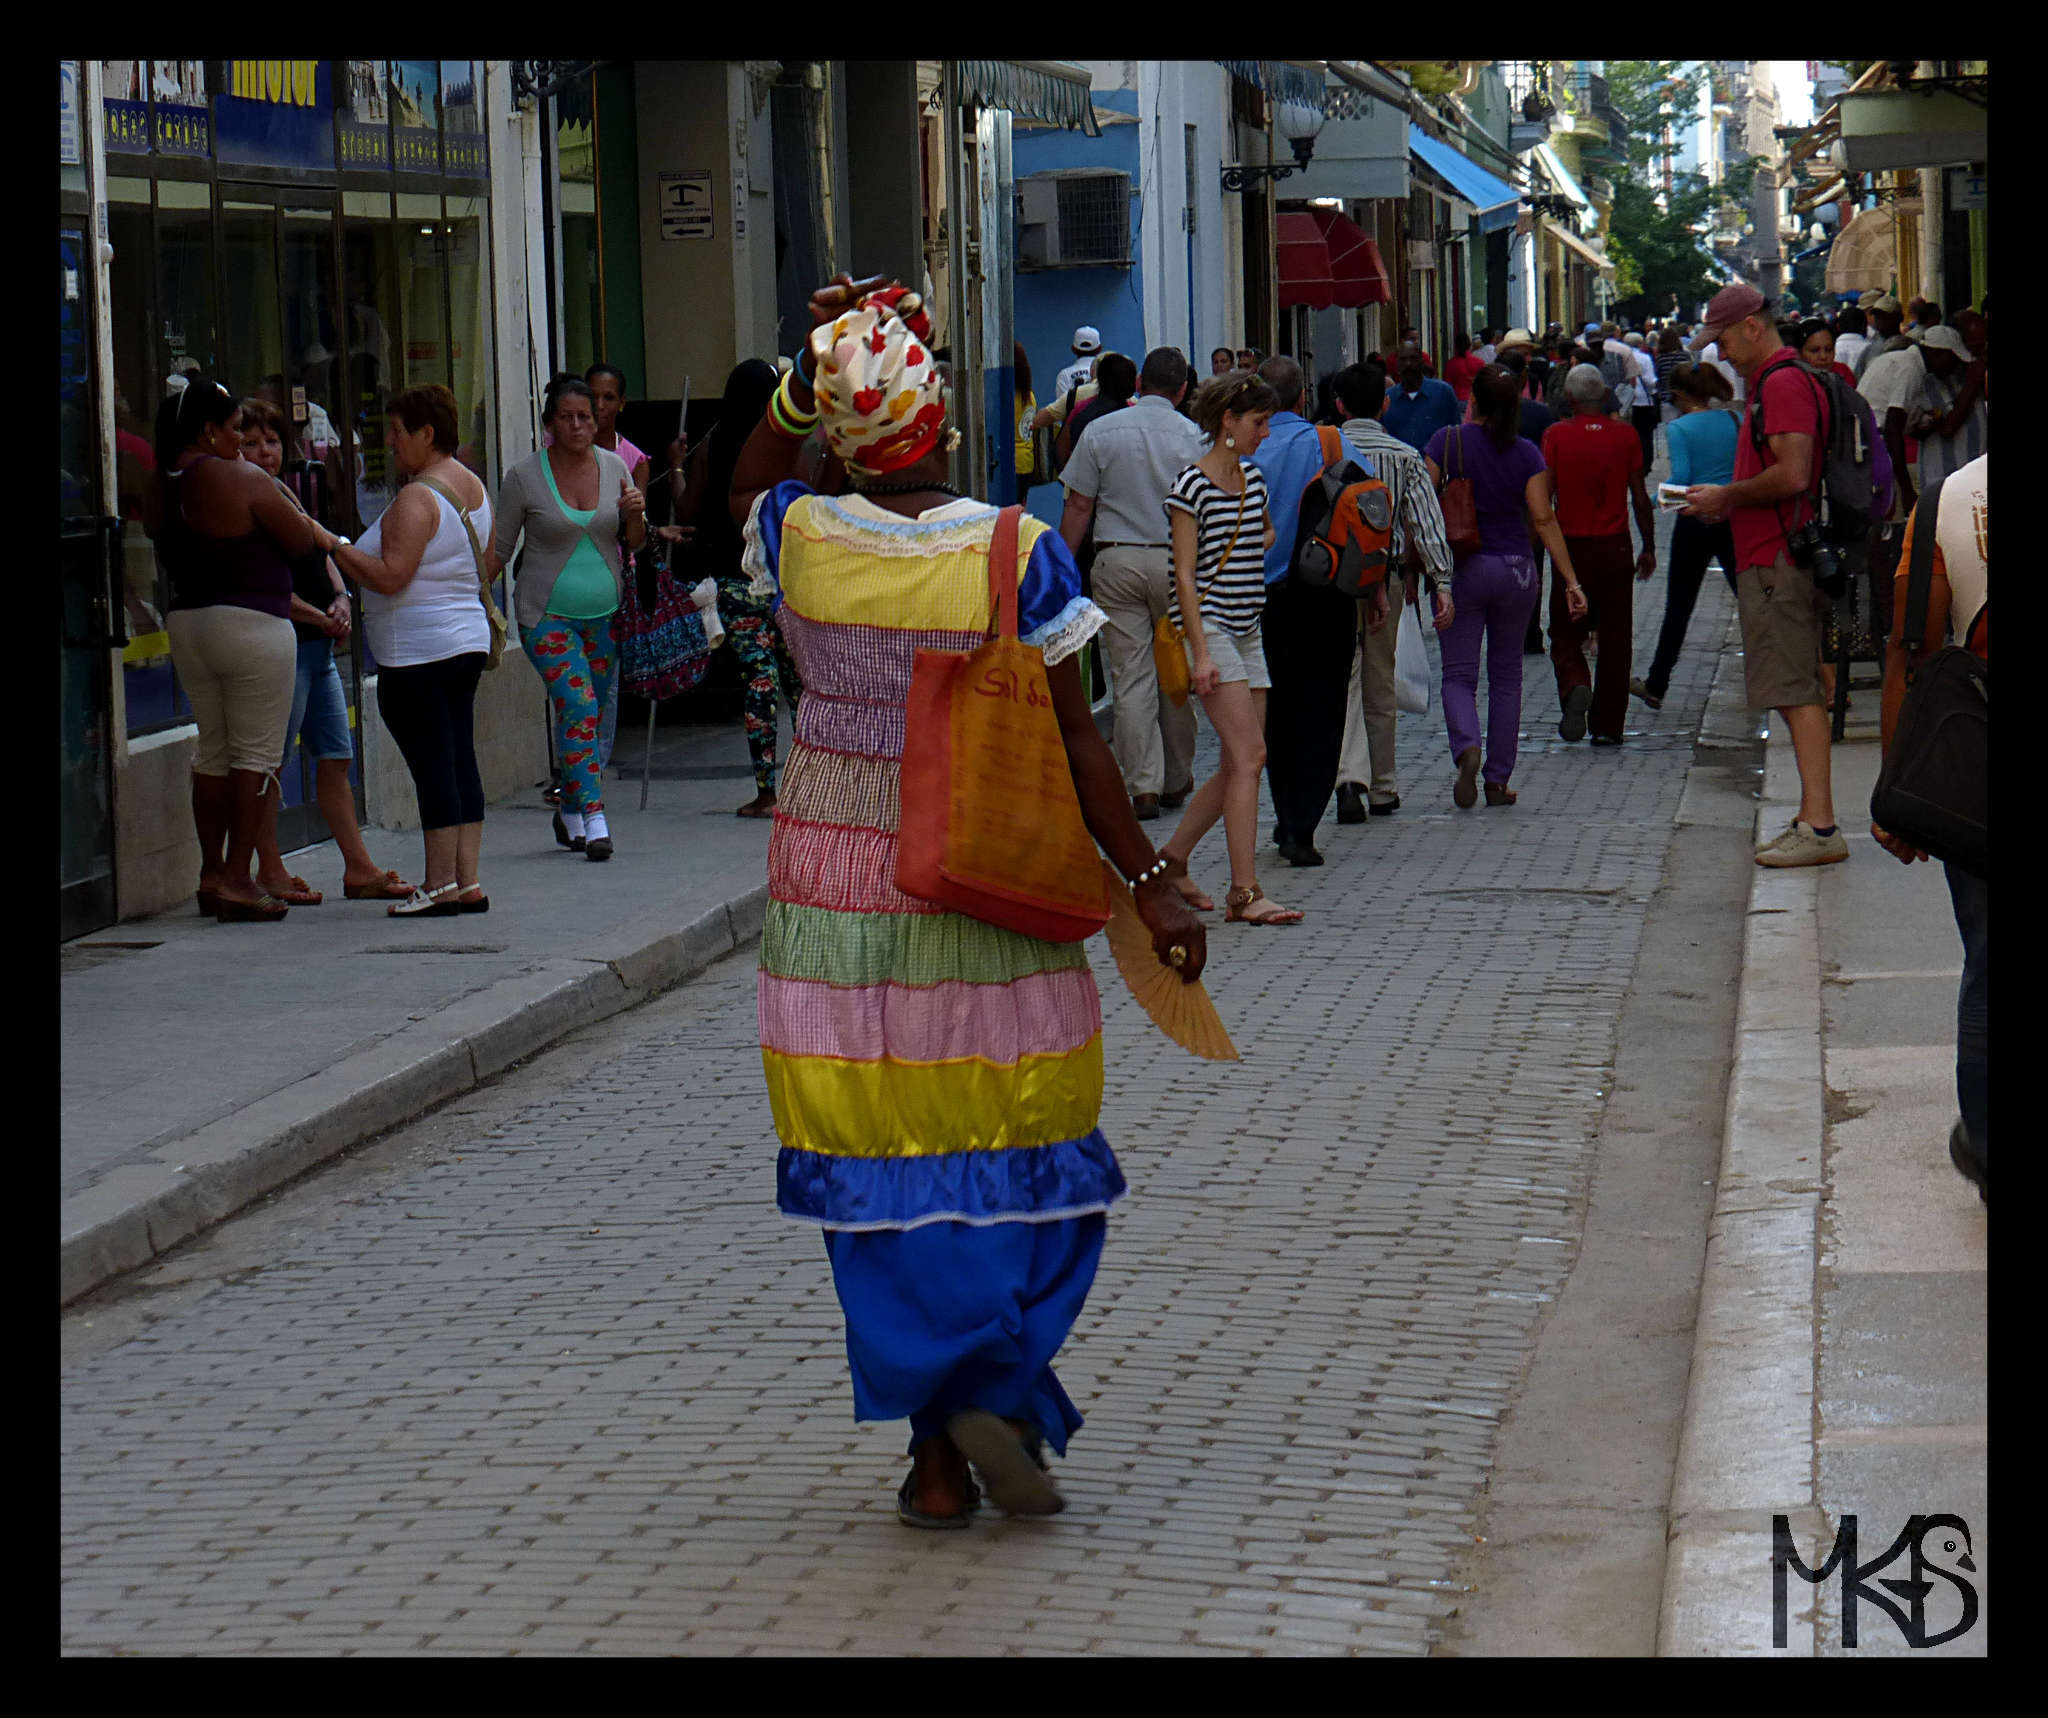 Woman in a colorful dress, Havana, Cuba